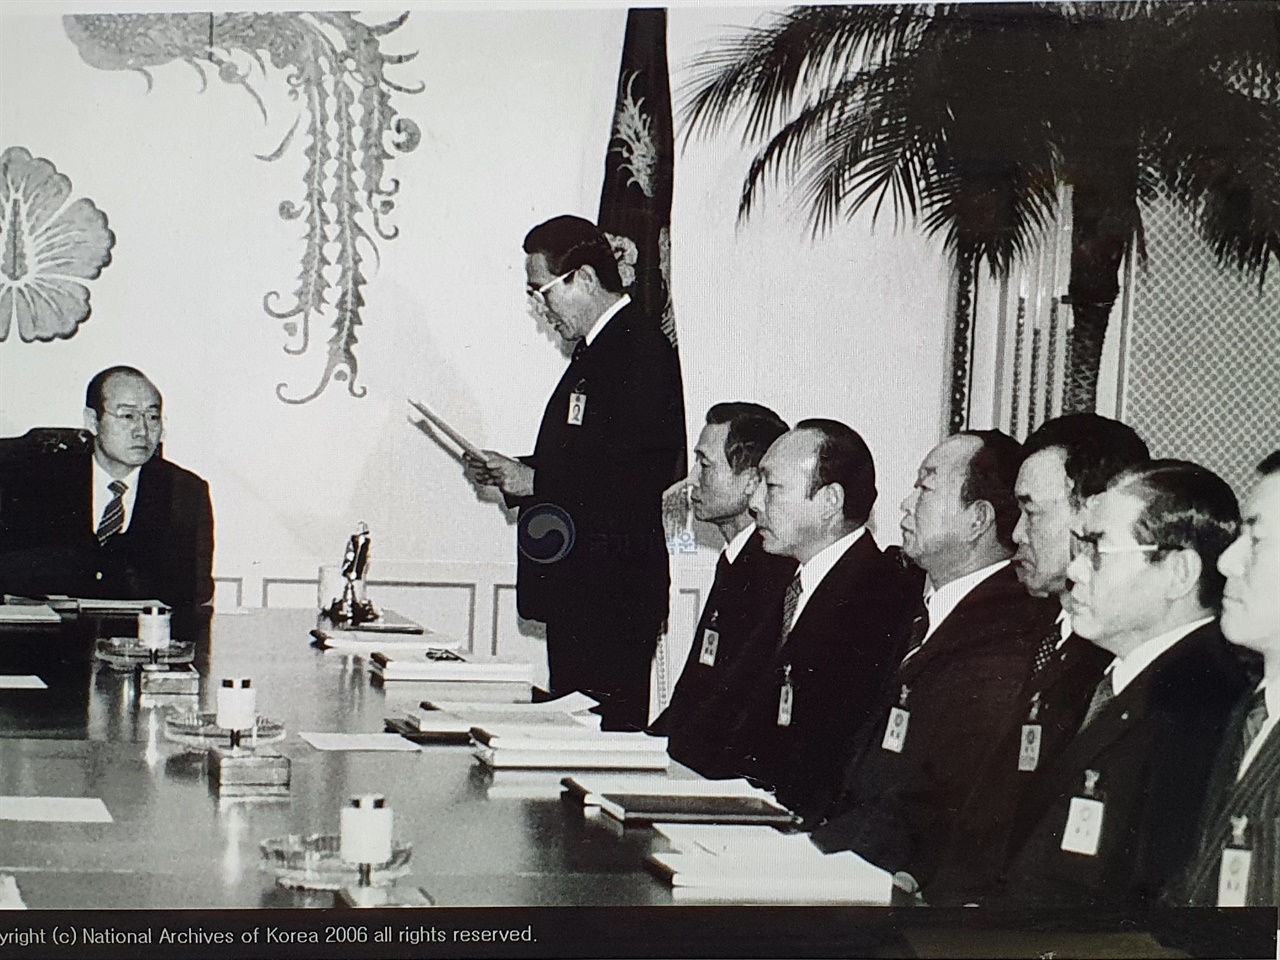 1983년 이희성 교통부 장관이 주요업무계획을 전두환 대통령에게 보고하는 모습 (사진 출처: 국가기록원)